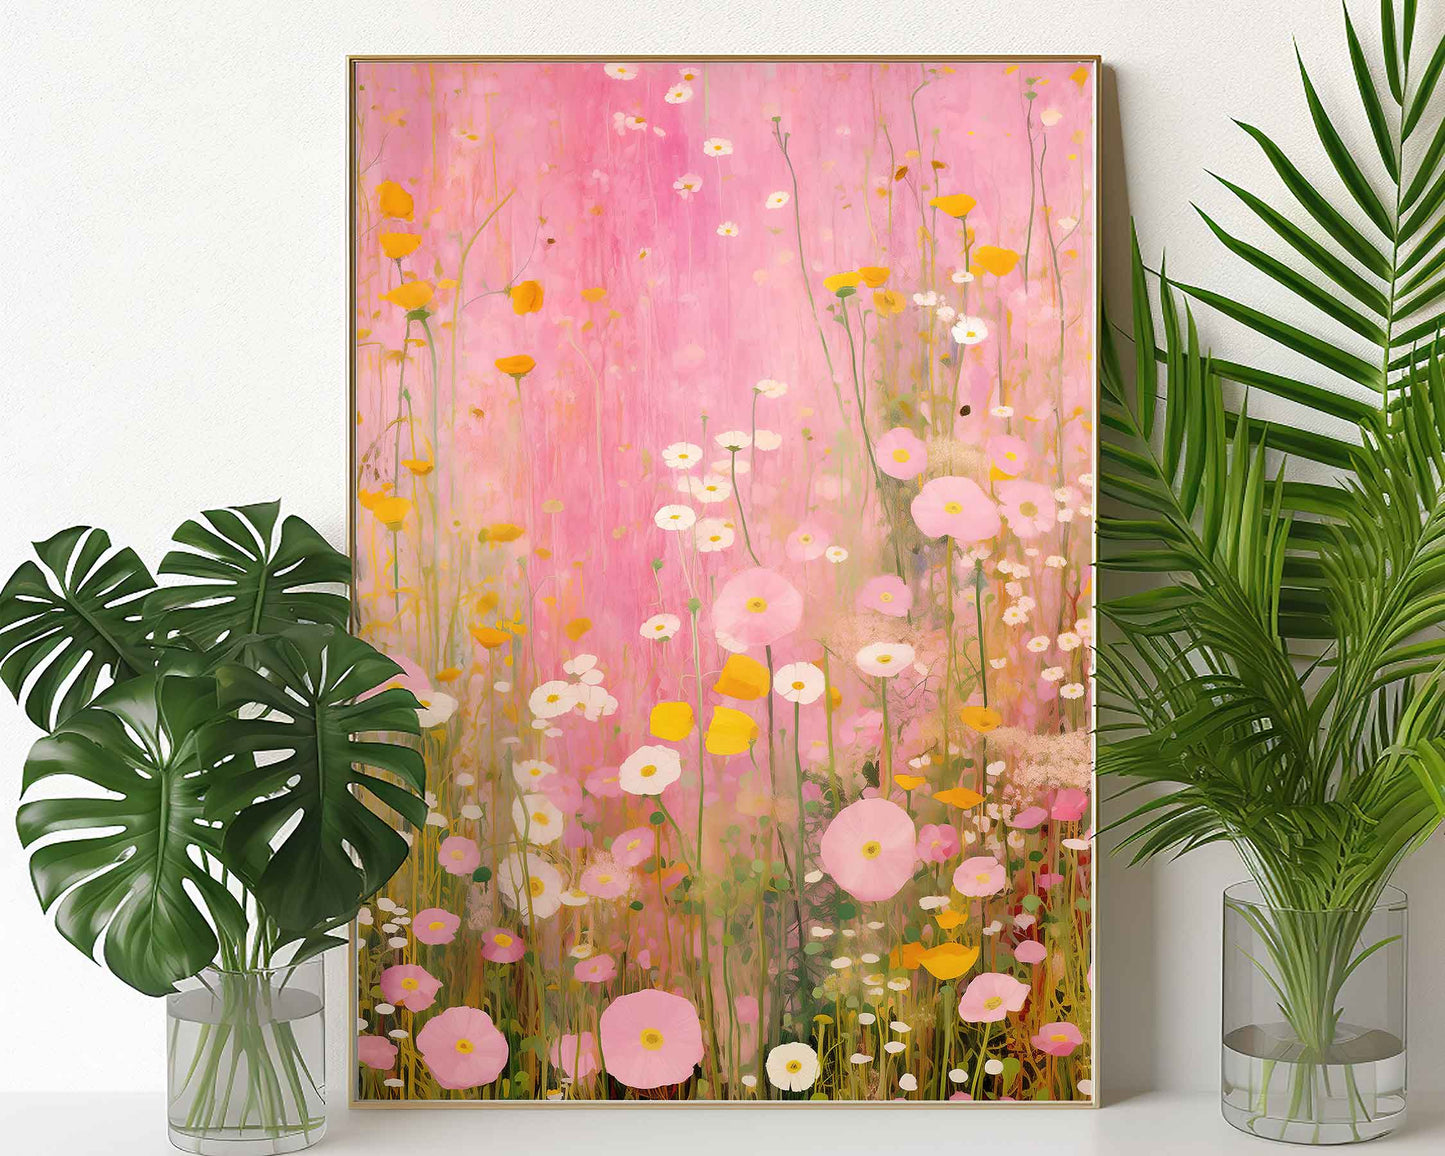 Framed Image of Gustav Klimt Style Pink Flowers Wall Art Print Poster